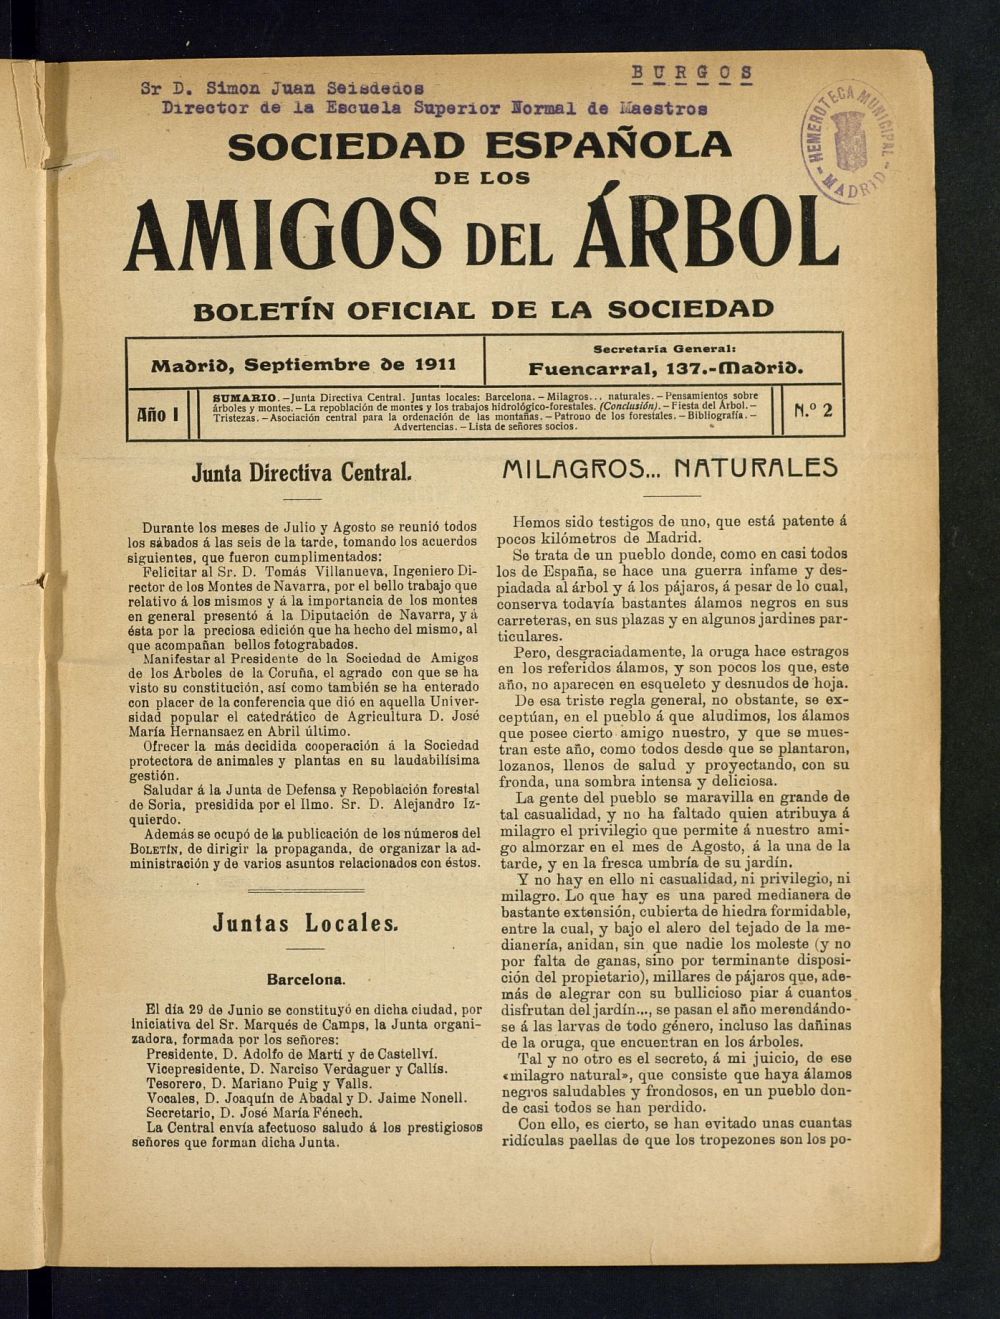 Boletn Comisin organizadora de la Sociedad Espaola de los amigos del rbol de septiembre de 1911